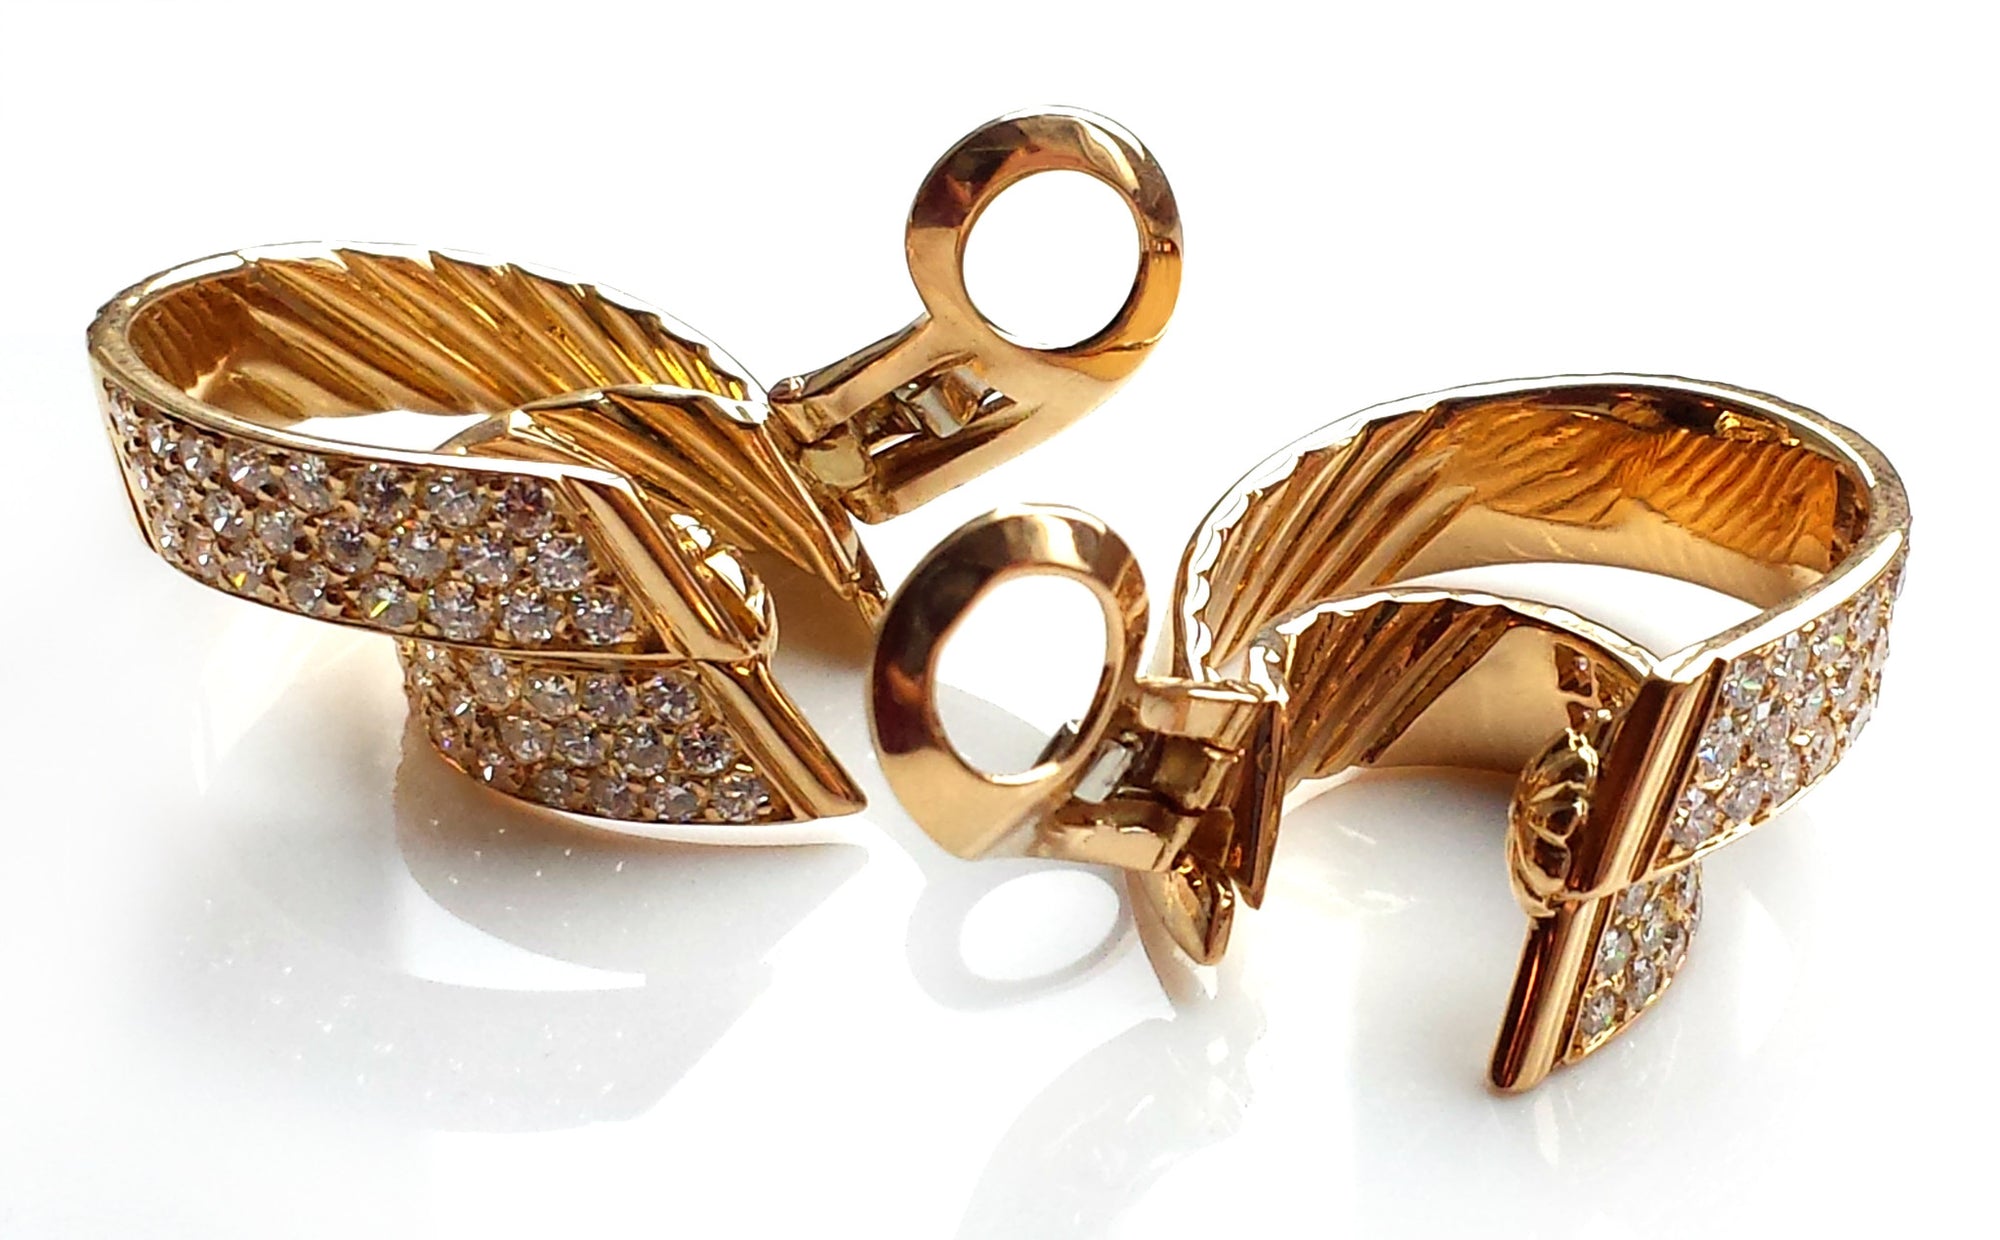 Rare Vintage 1980s Van Cleef & Arpels Diamond & 18k Gold Large Hoop Earrings